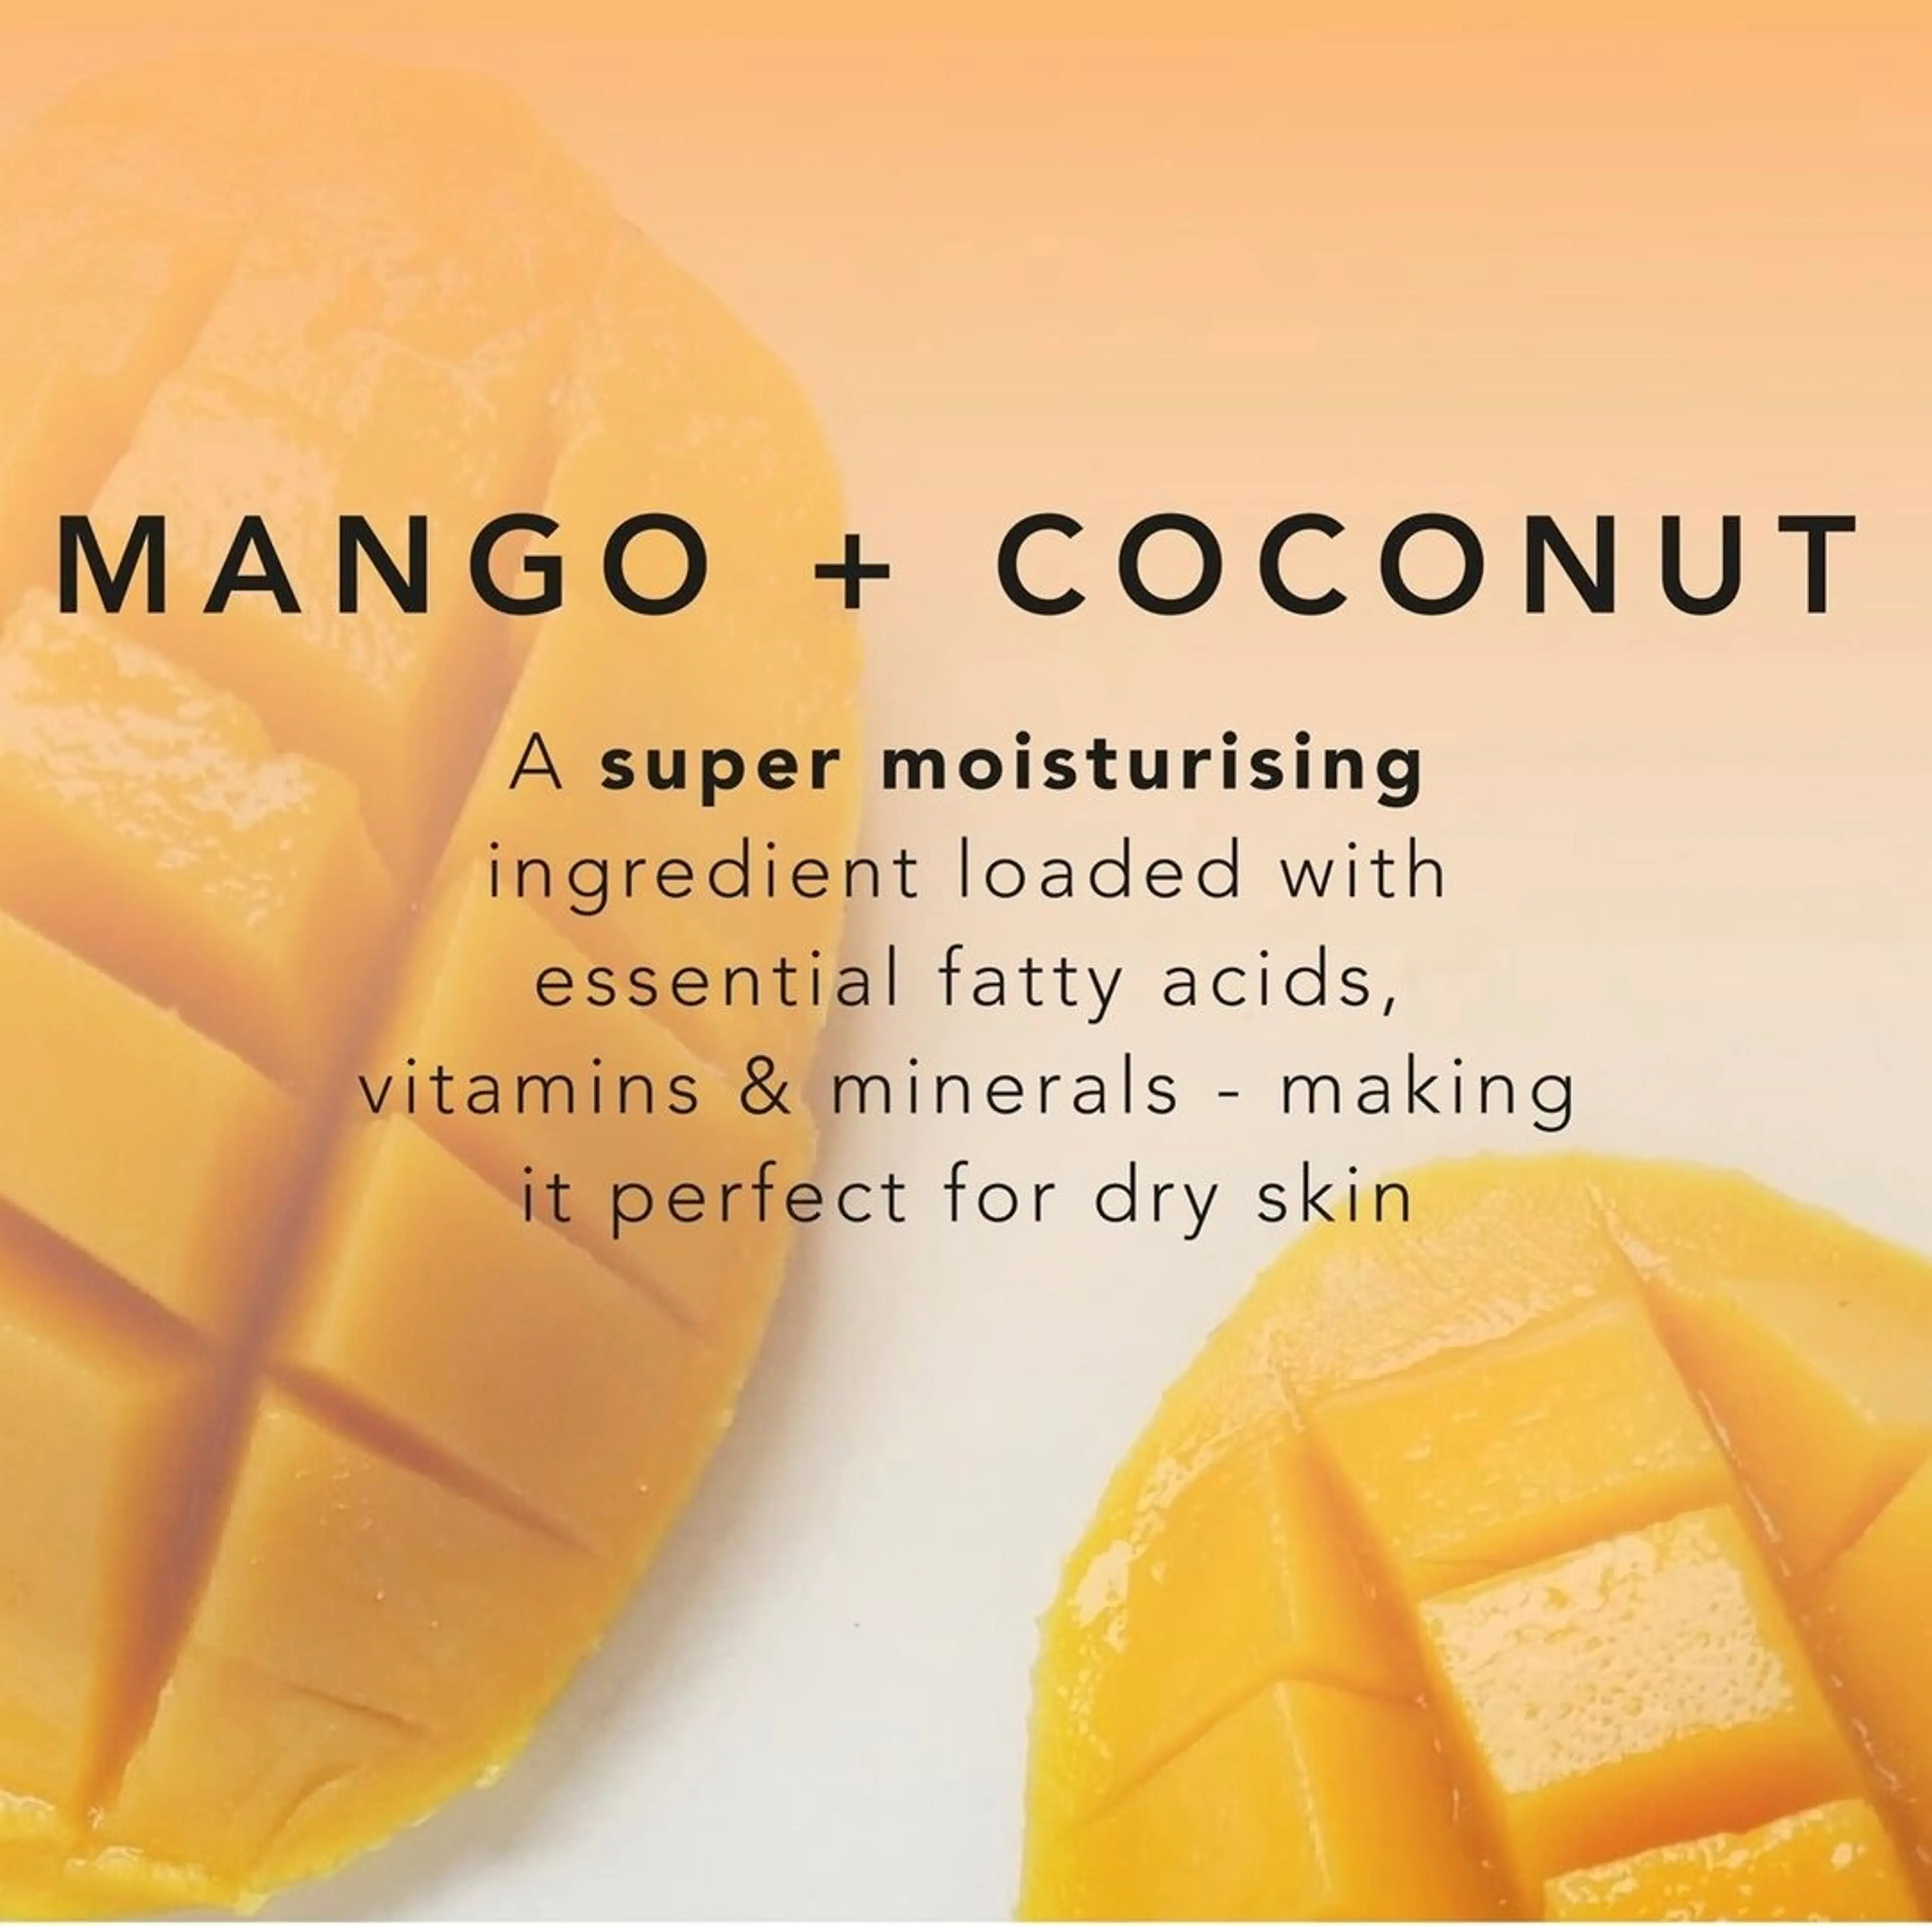 Sunday Rain mango-kookos vartalovoi 250 ml